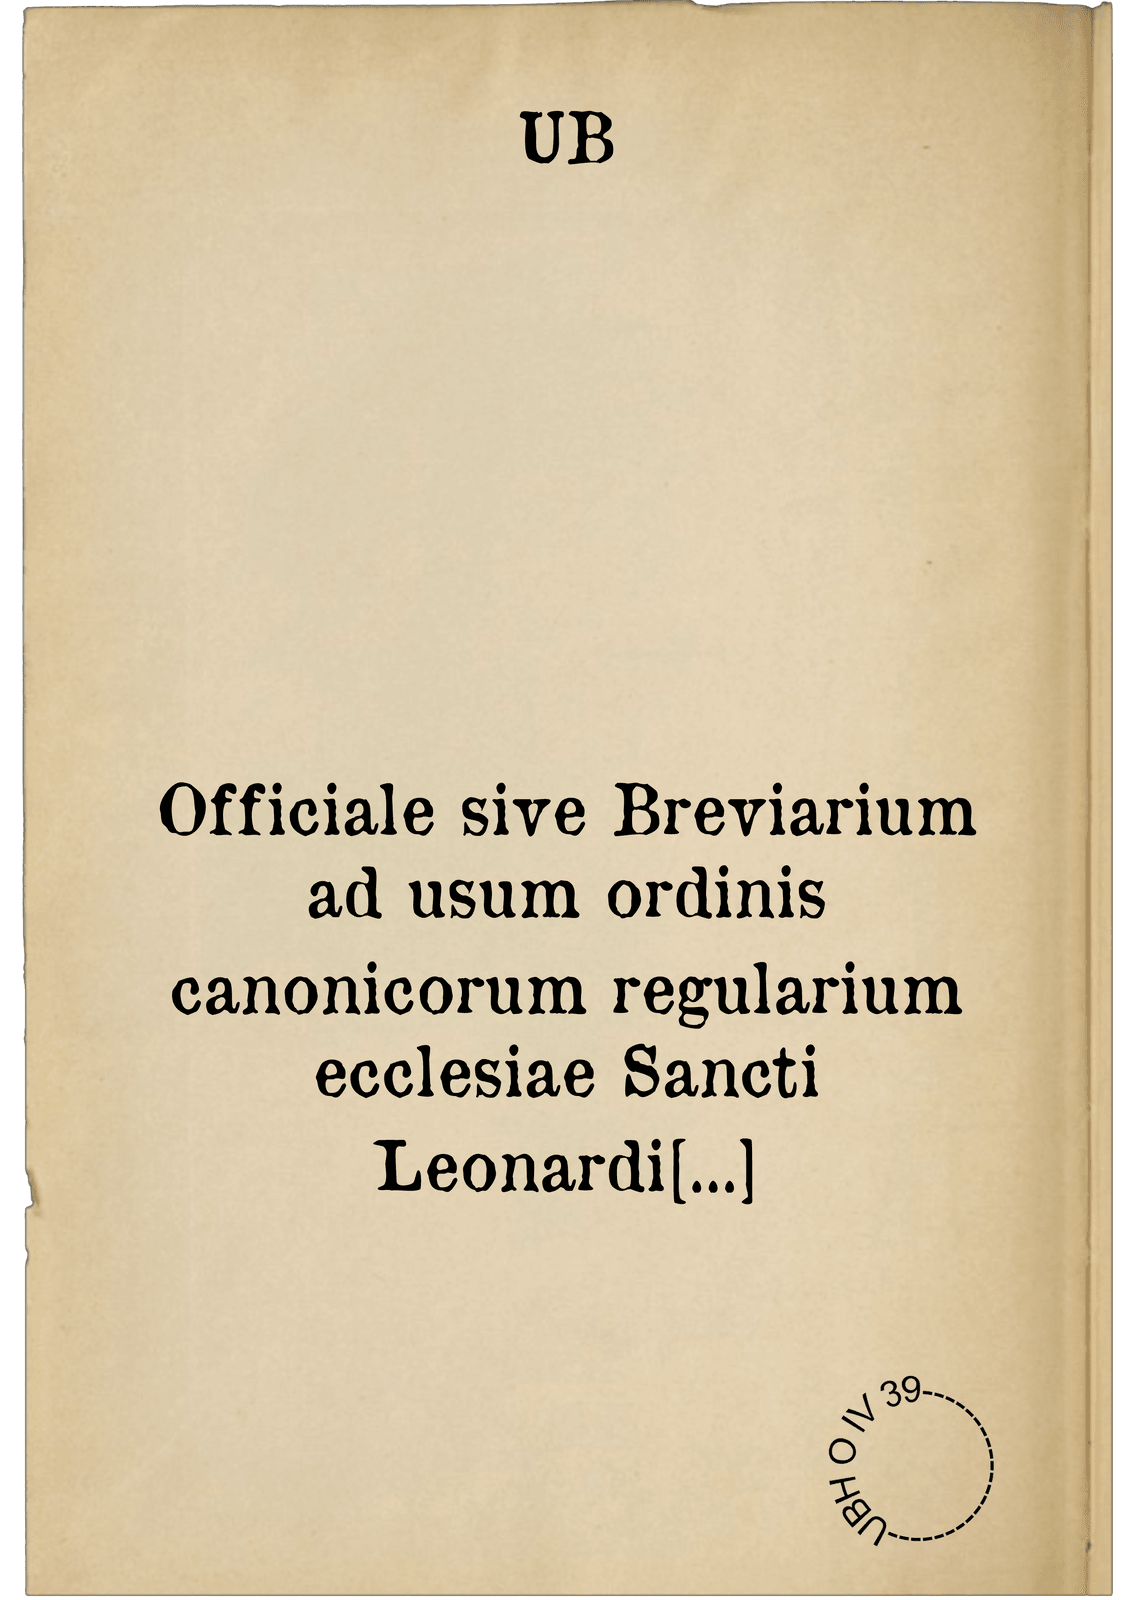 Officiale sive Breviarium ad usum ordinis canonicorum regularium ecclesiae Sancti Leonardi Basiliensis (Nocturnale)